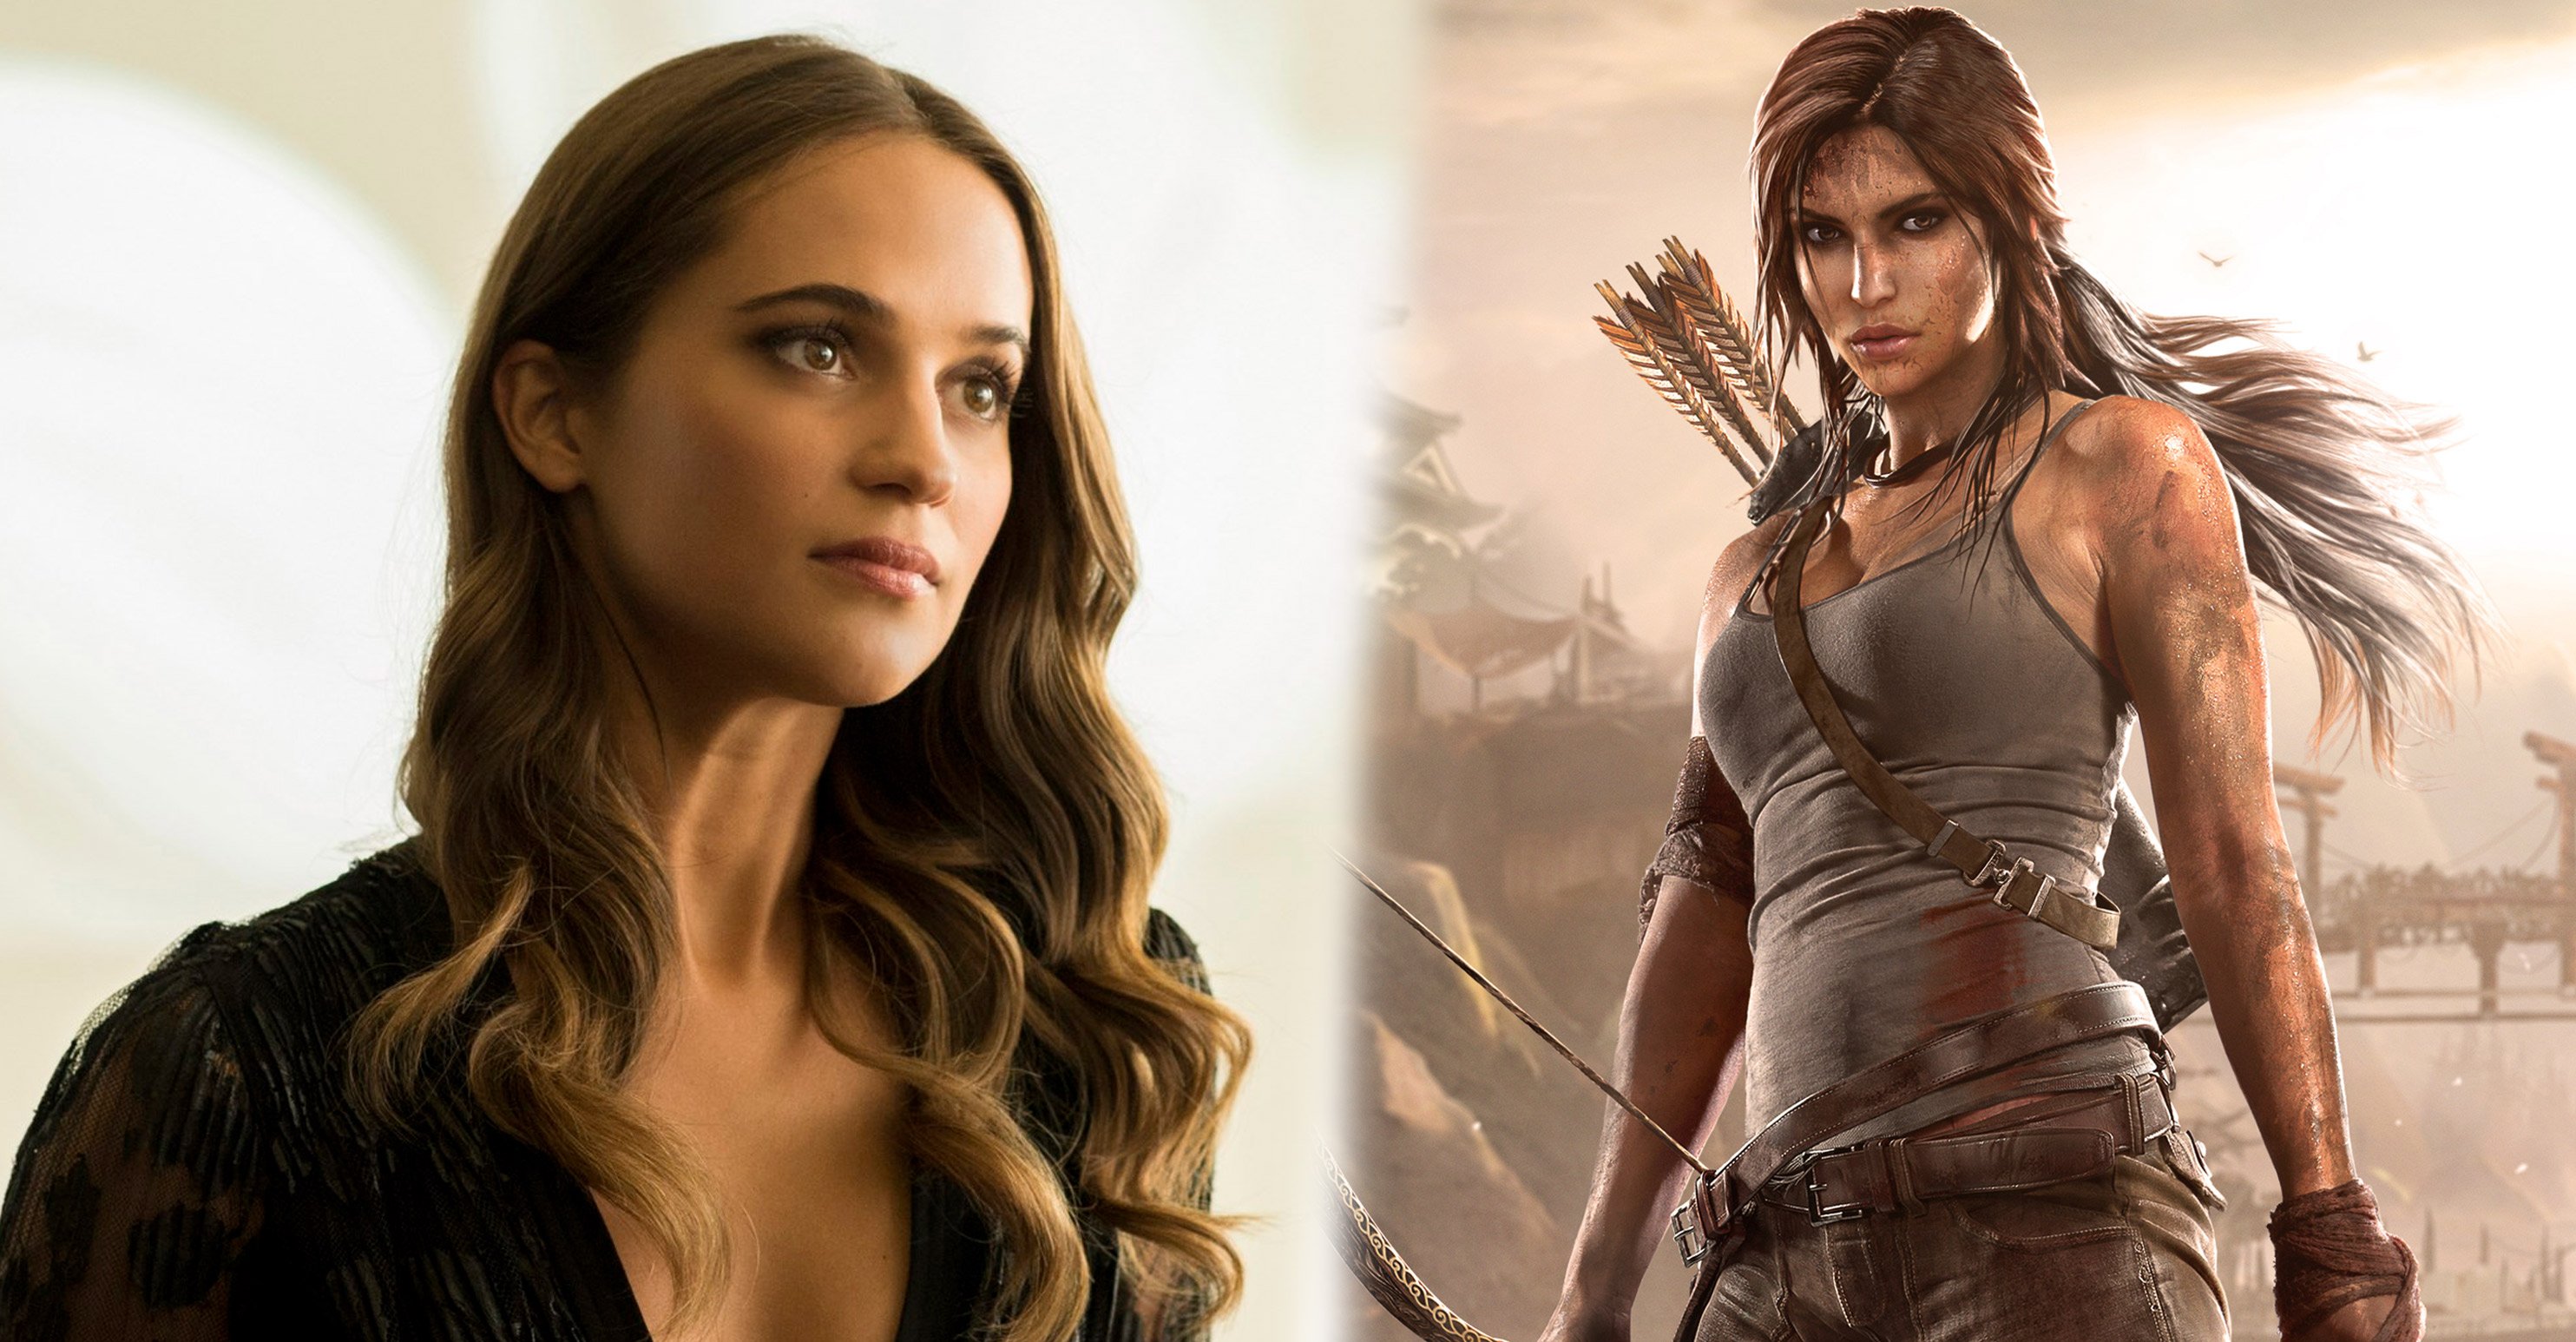 Atriz que fez o filme do jogo Tomb Raider ao lado de sua personagem Lara Croft